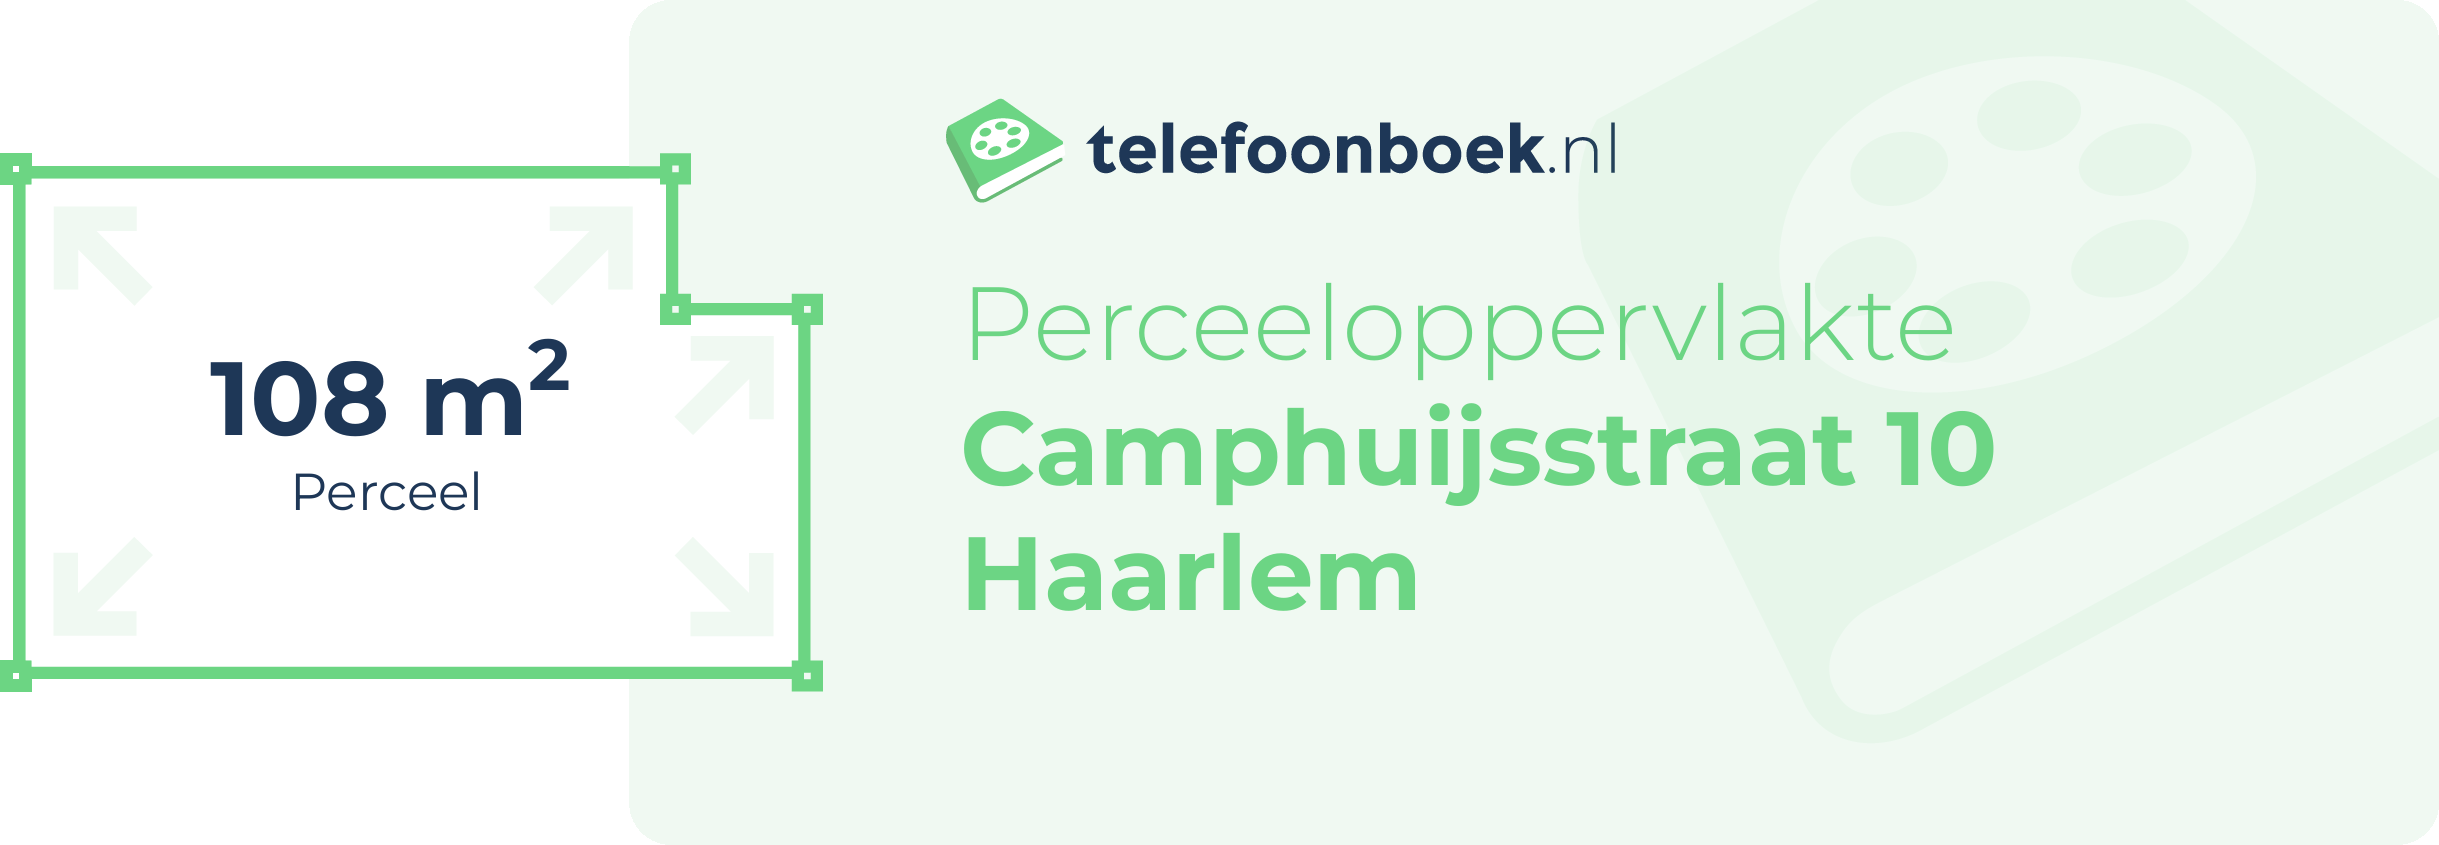 Perceeloppervlakte Camphuijsstraat 10 Haarlem